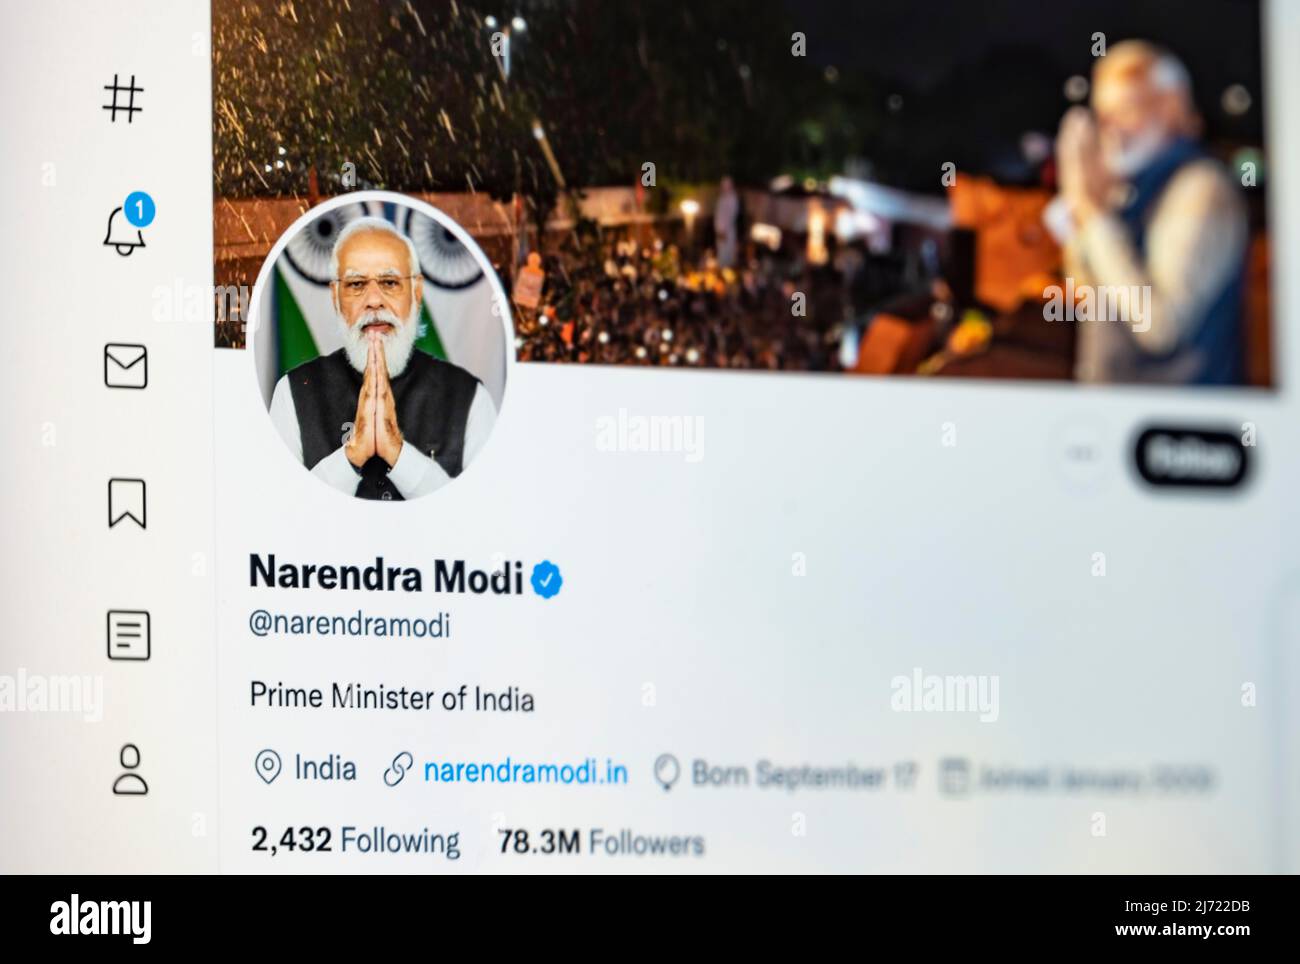 Twitter Seite des indischen Premierministri Narendra modi, Twitter, Soziales Netzwerk, Internet, Bildschirmfoto, Dettaglio, Germania Foto Stock